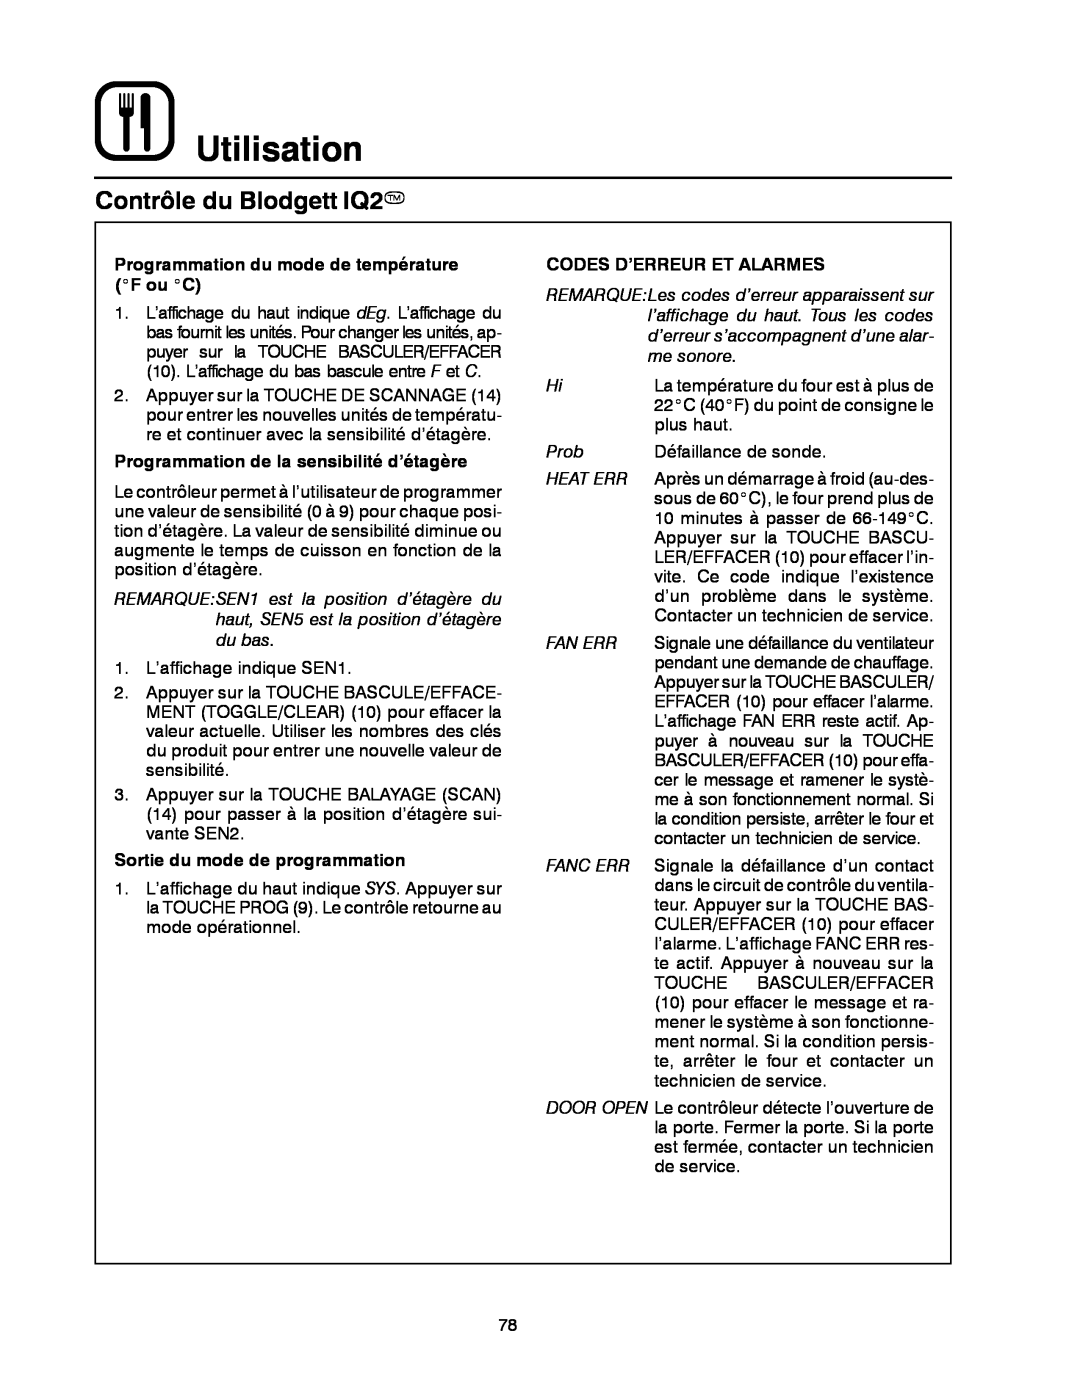 Blodgett DFG-50 manual Utilisation, Contrôle du Blodgett IQ2T, Programmation du mode de température F ou C 